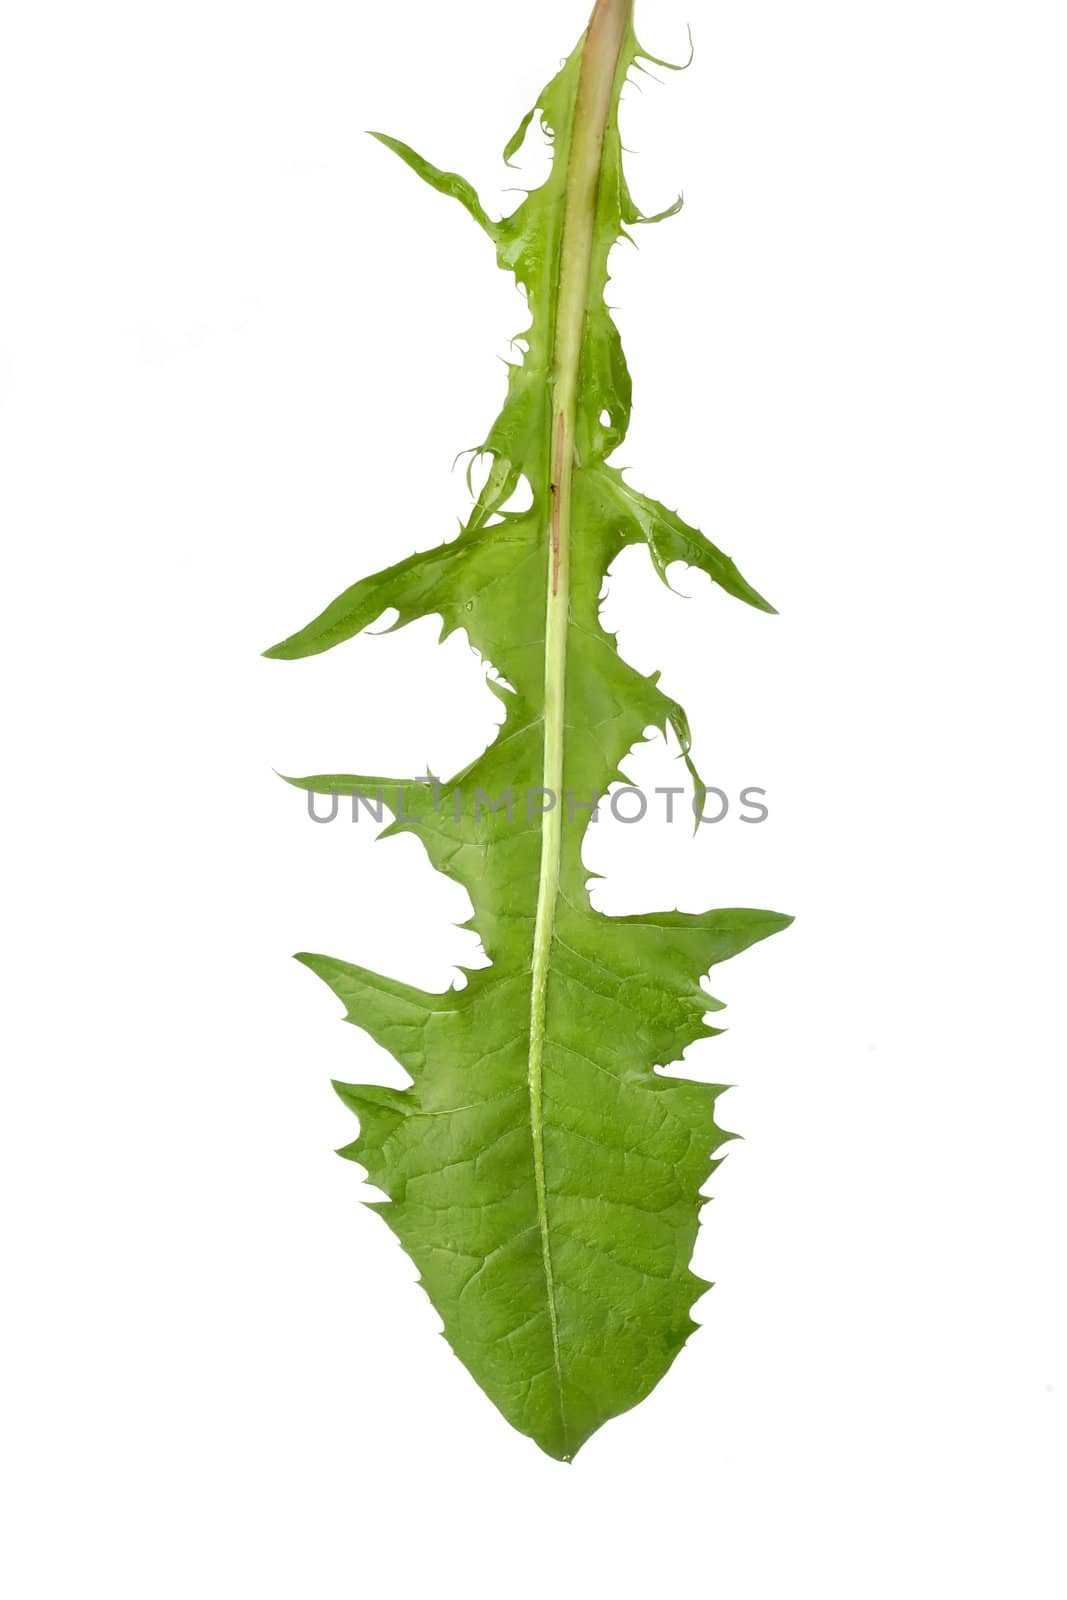 Dandlelion leaf isolated on white background